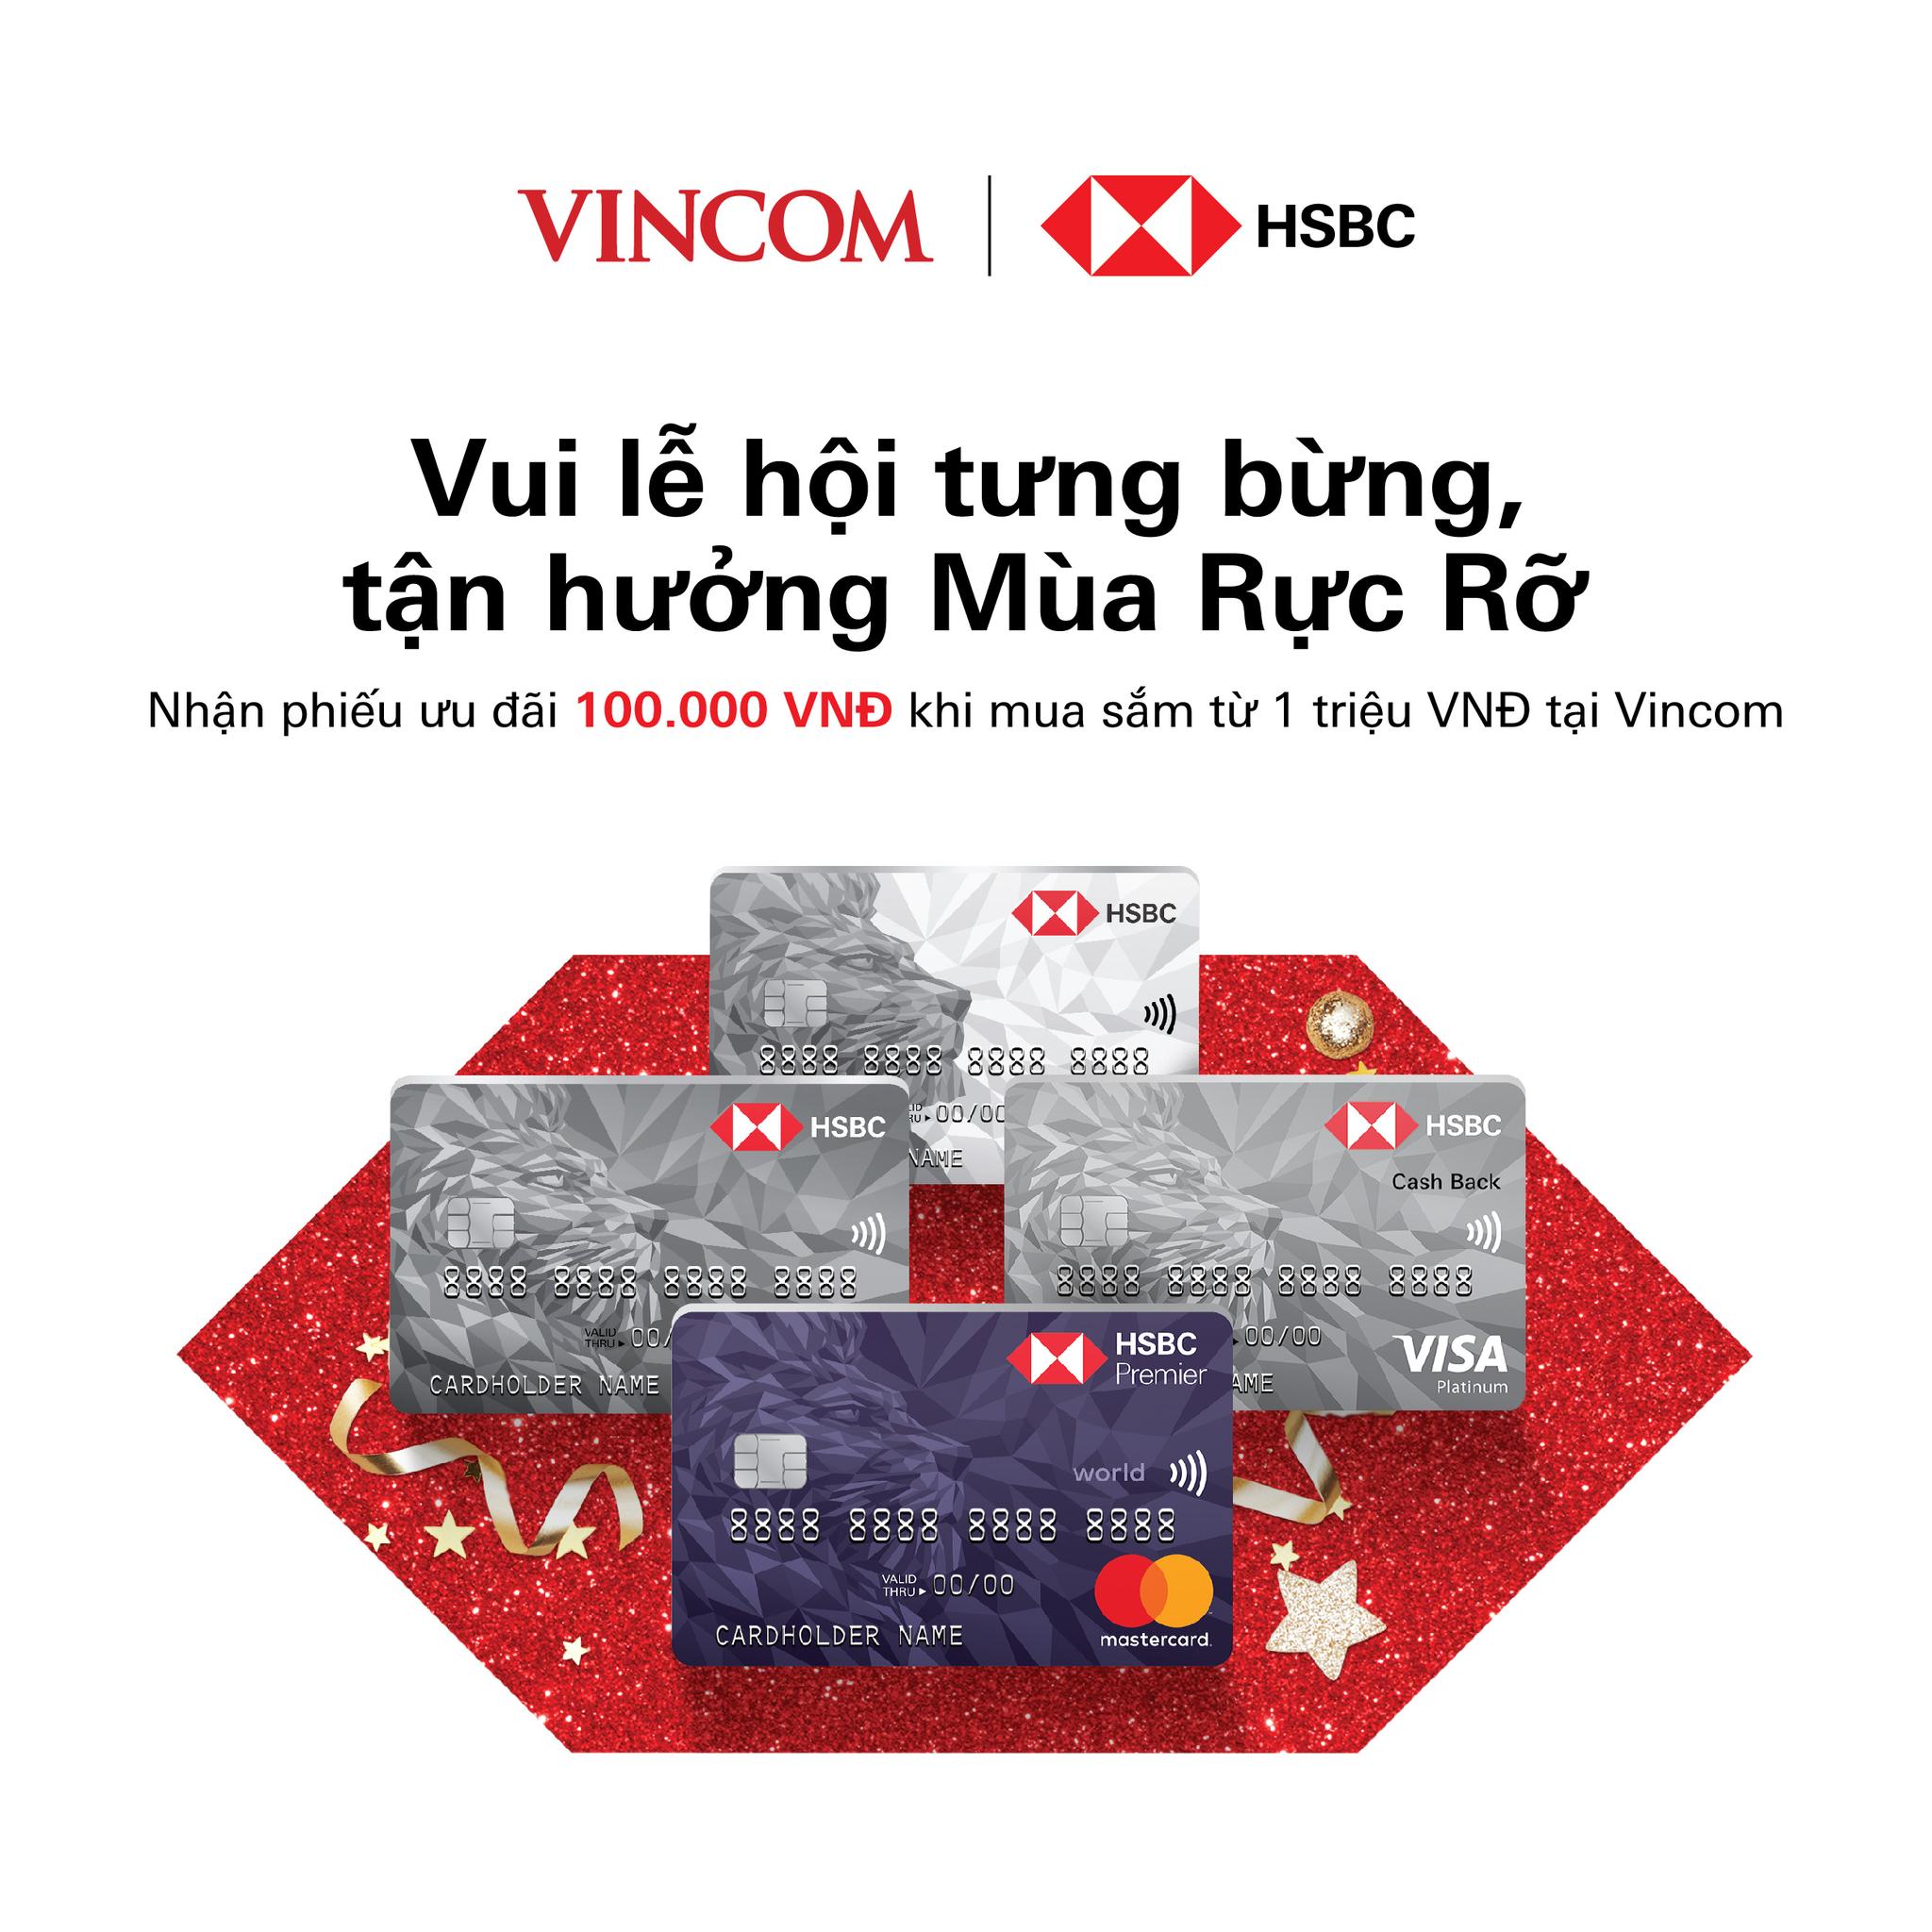 Mở thẻ HSBC nhận quà cùng Vincom